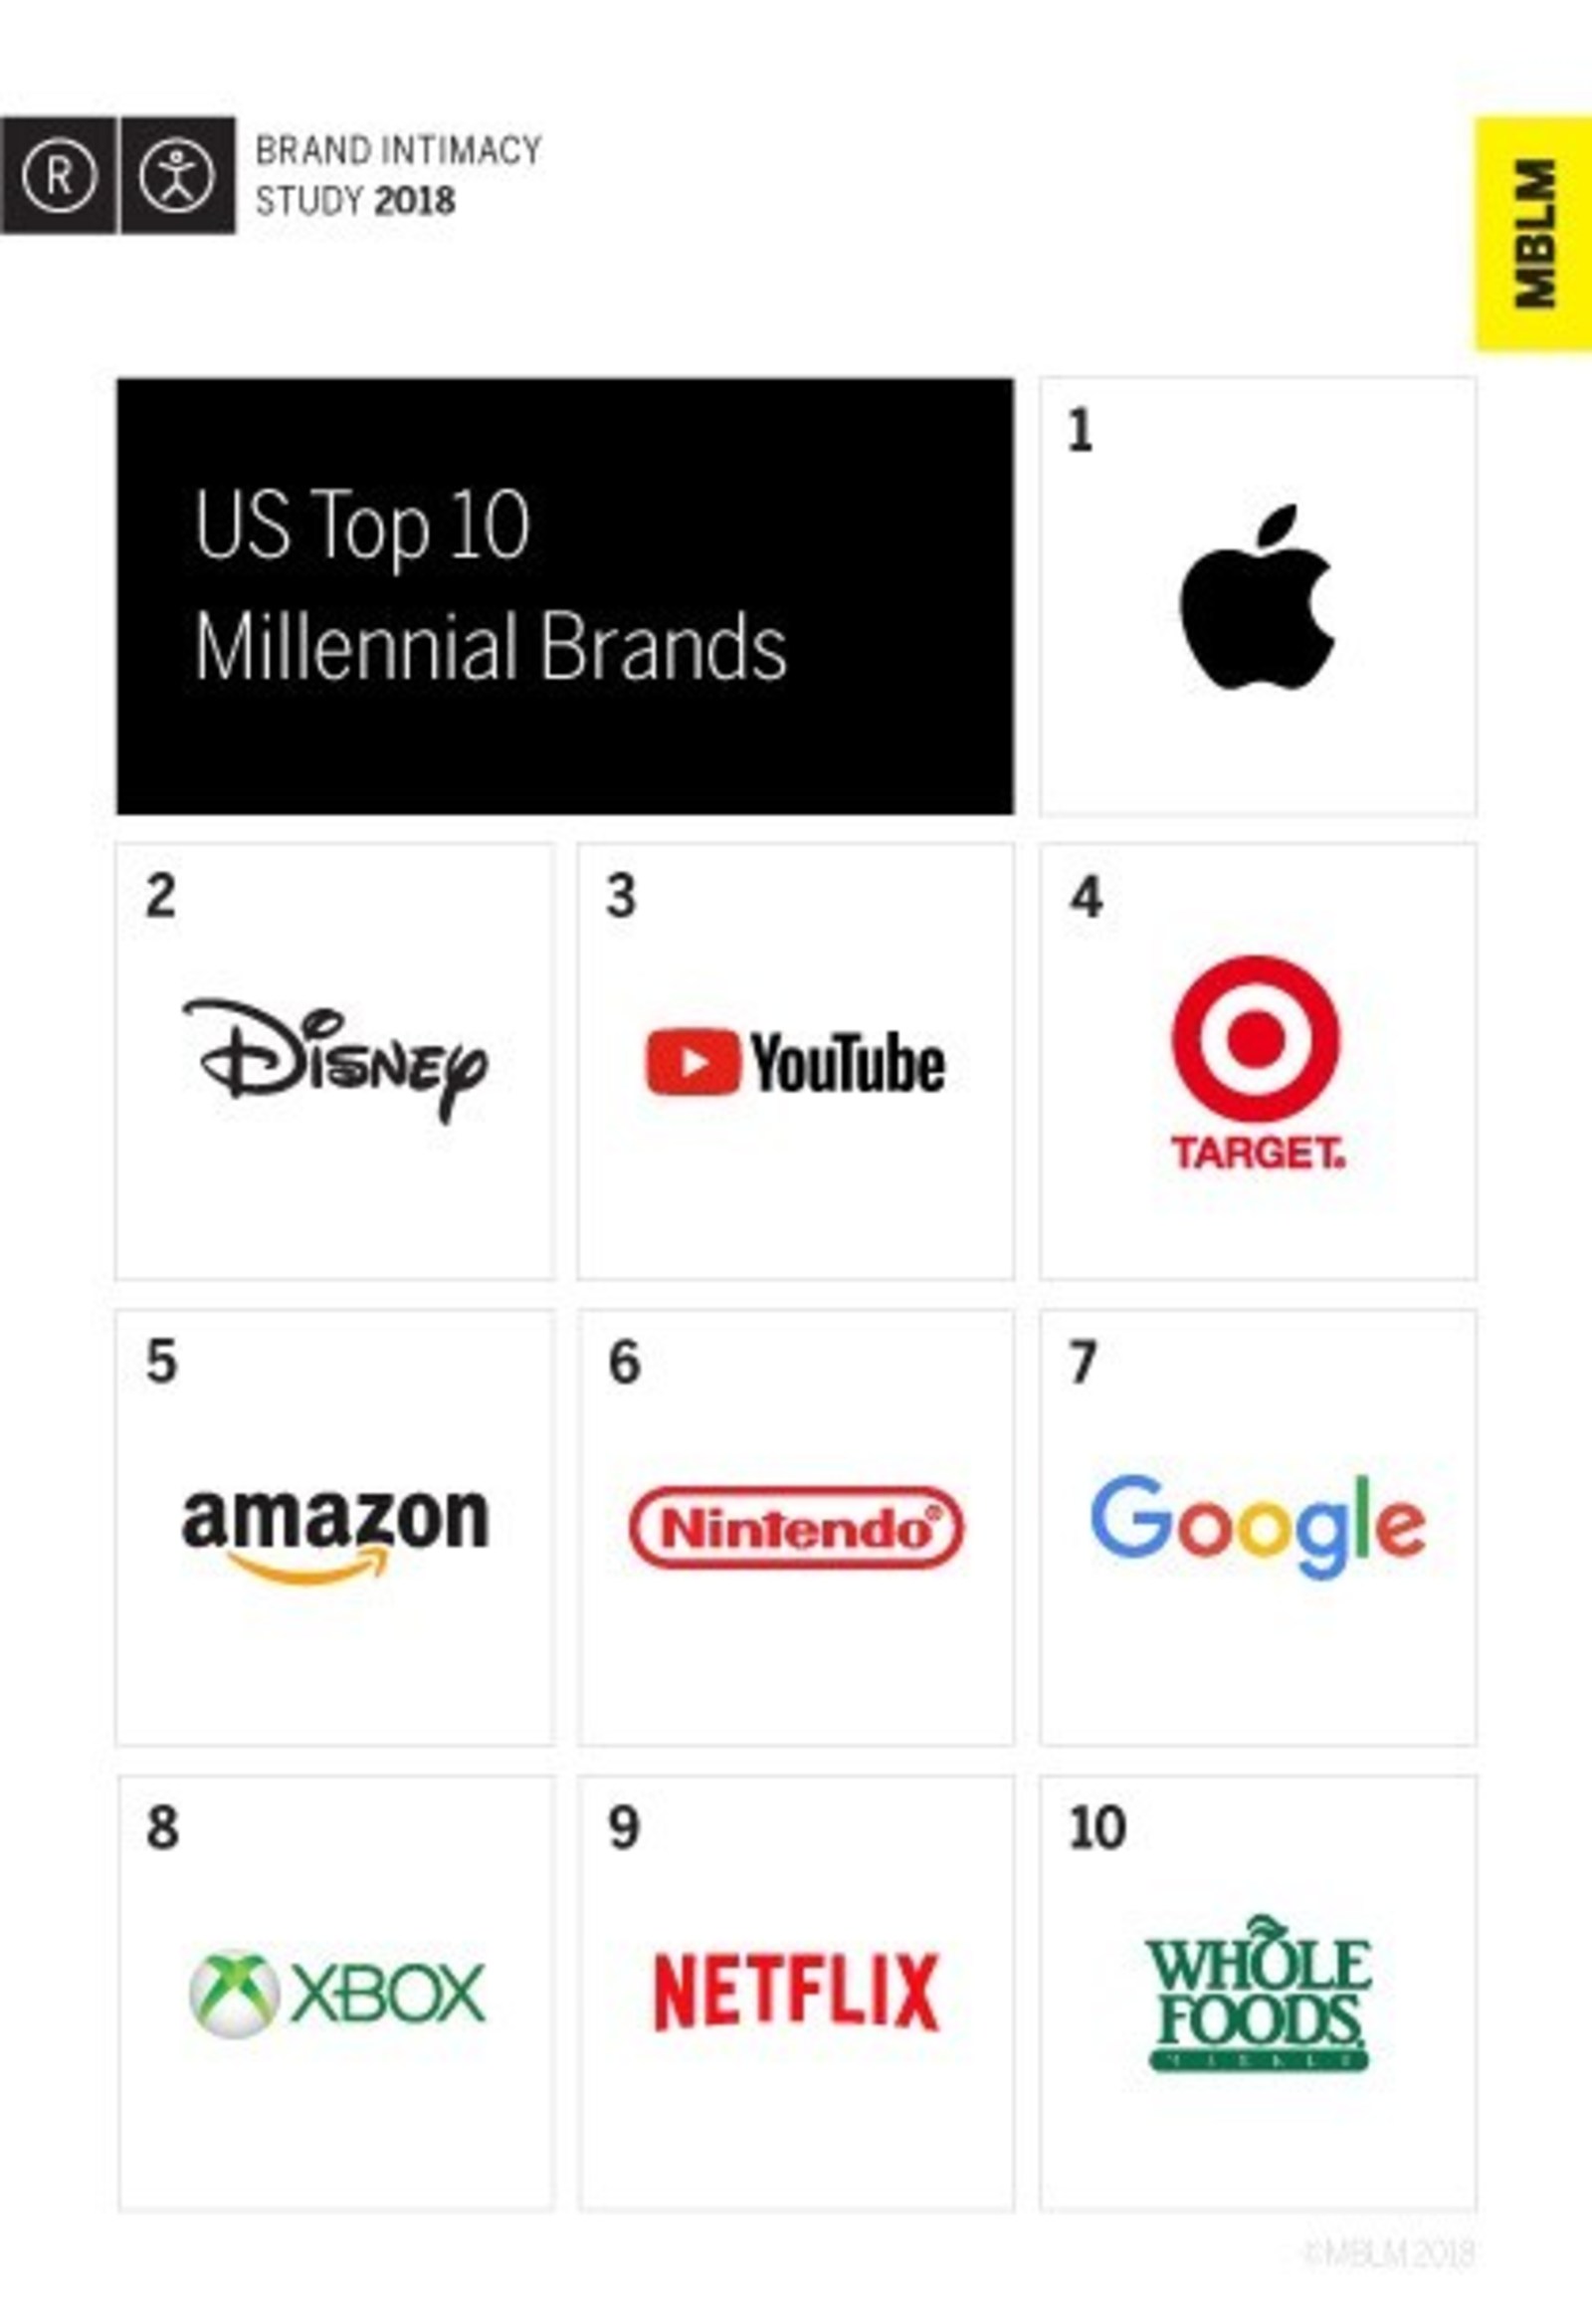 Brand its. Top brand Intimacy. Millennials бренд надпись. Multiple brands.